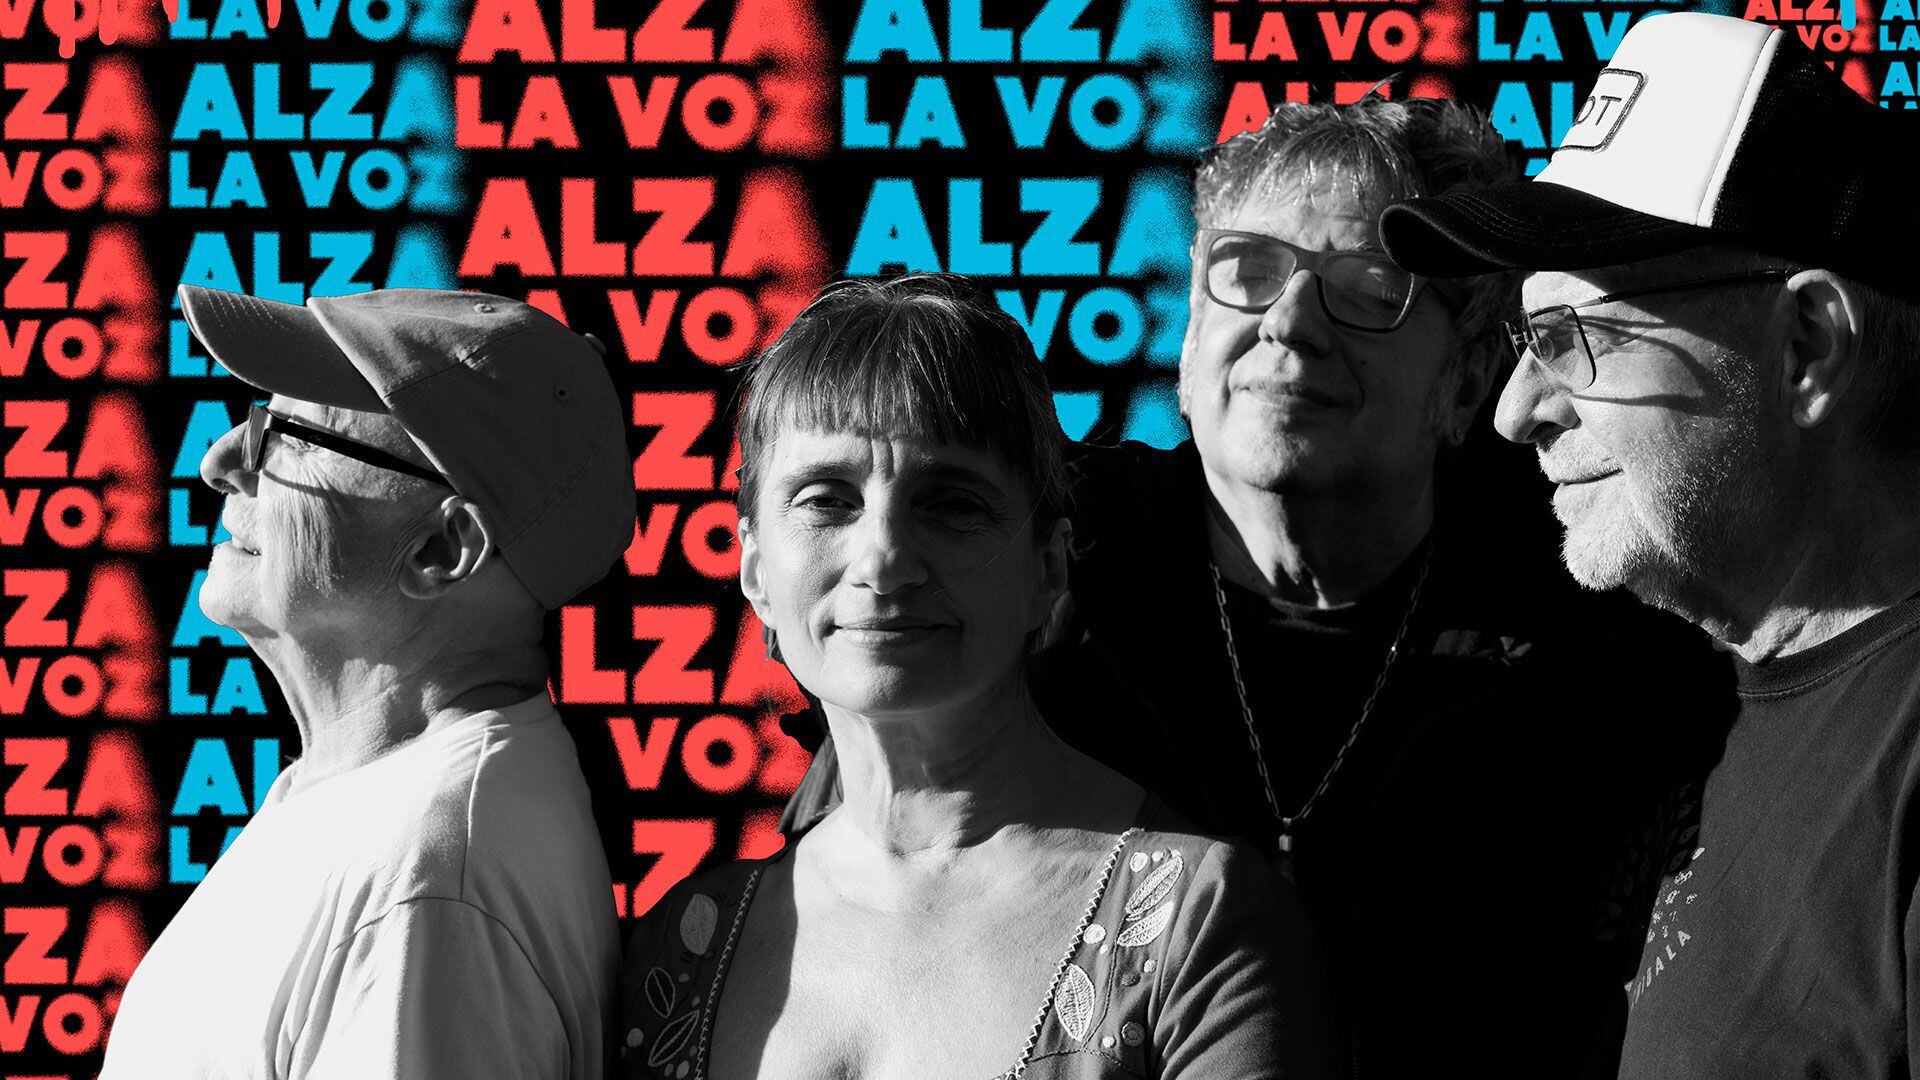 Juan Baglietto, Hilda Lizarazu, León Gieco y Lito Vitale, protagonistas del show "Alza la voz" (Foto: prensa Teatro Coliseo)